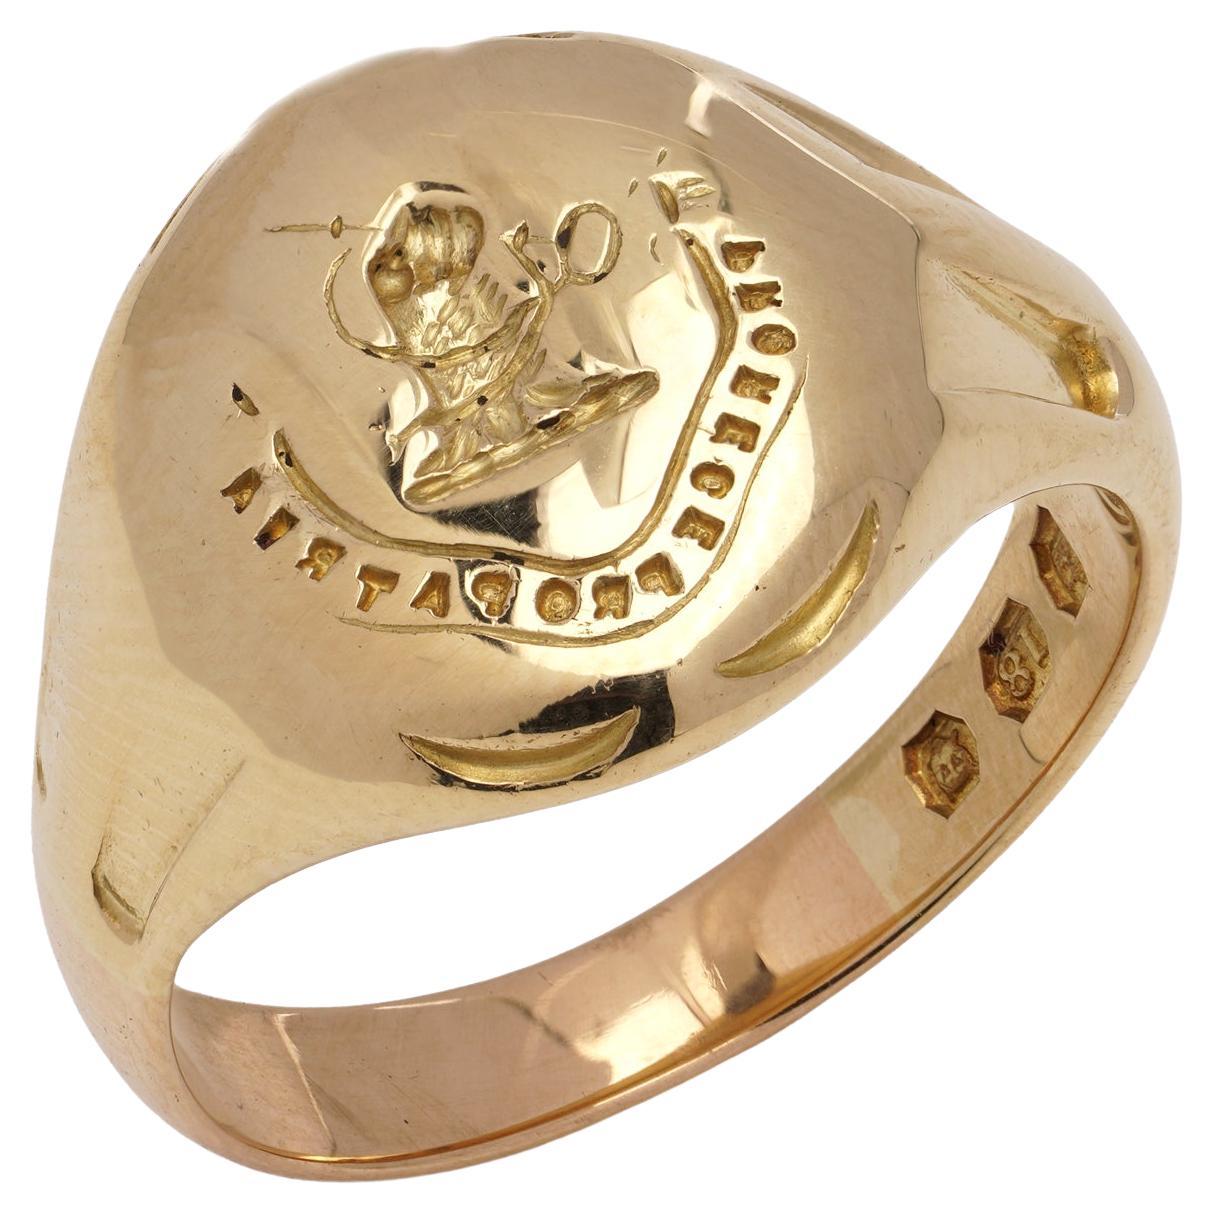 Bague chevalière en or 18kt avec inscription latine "For King and Country" (Pour le roi et la patrie)